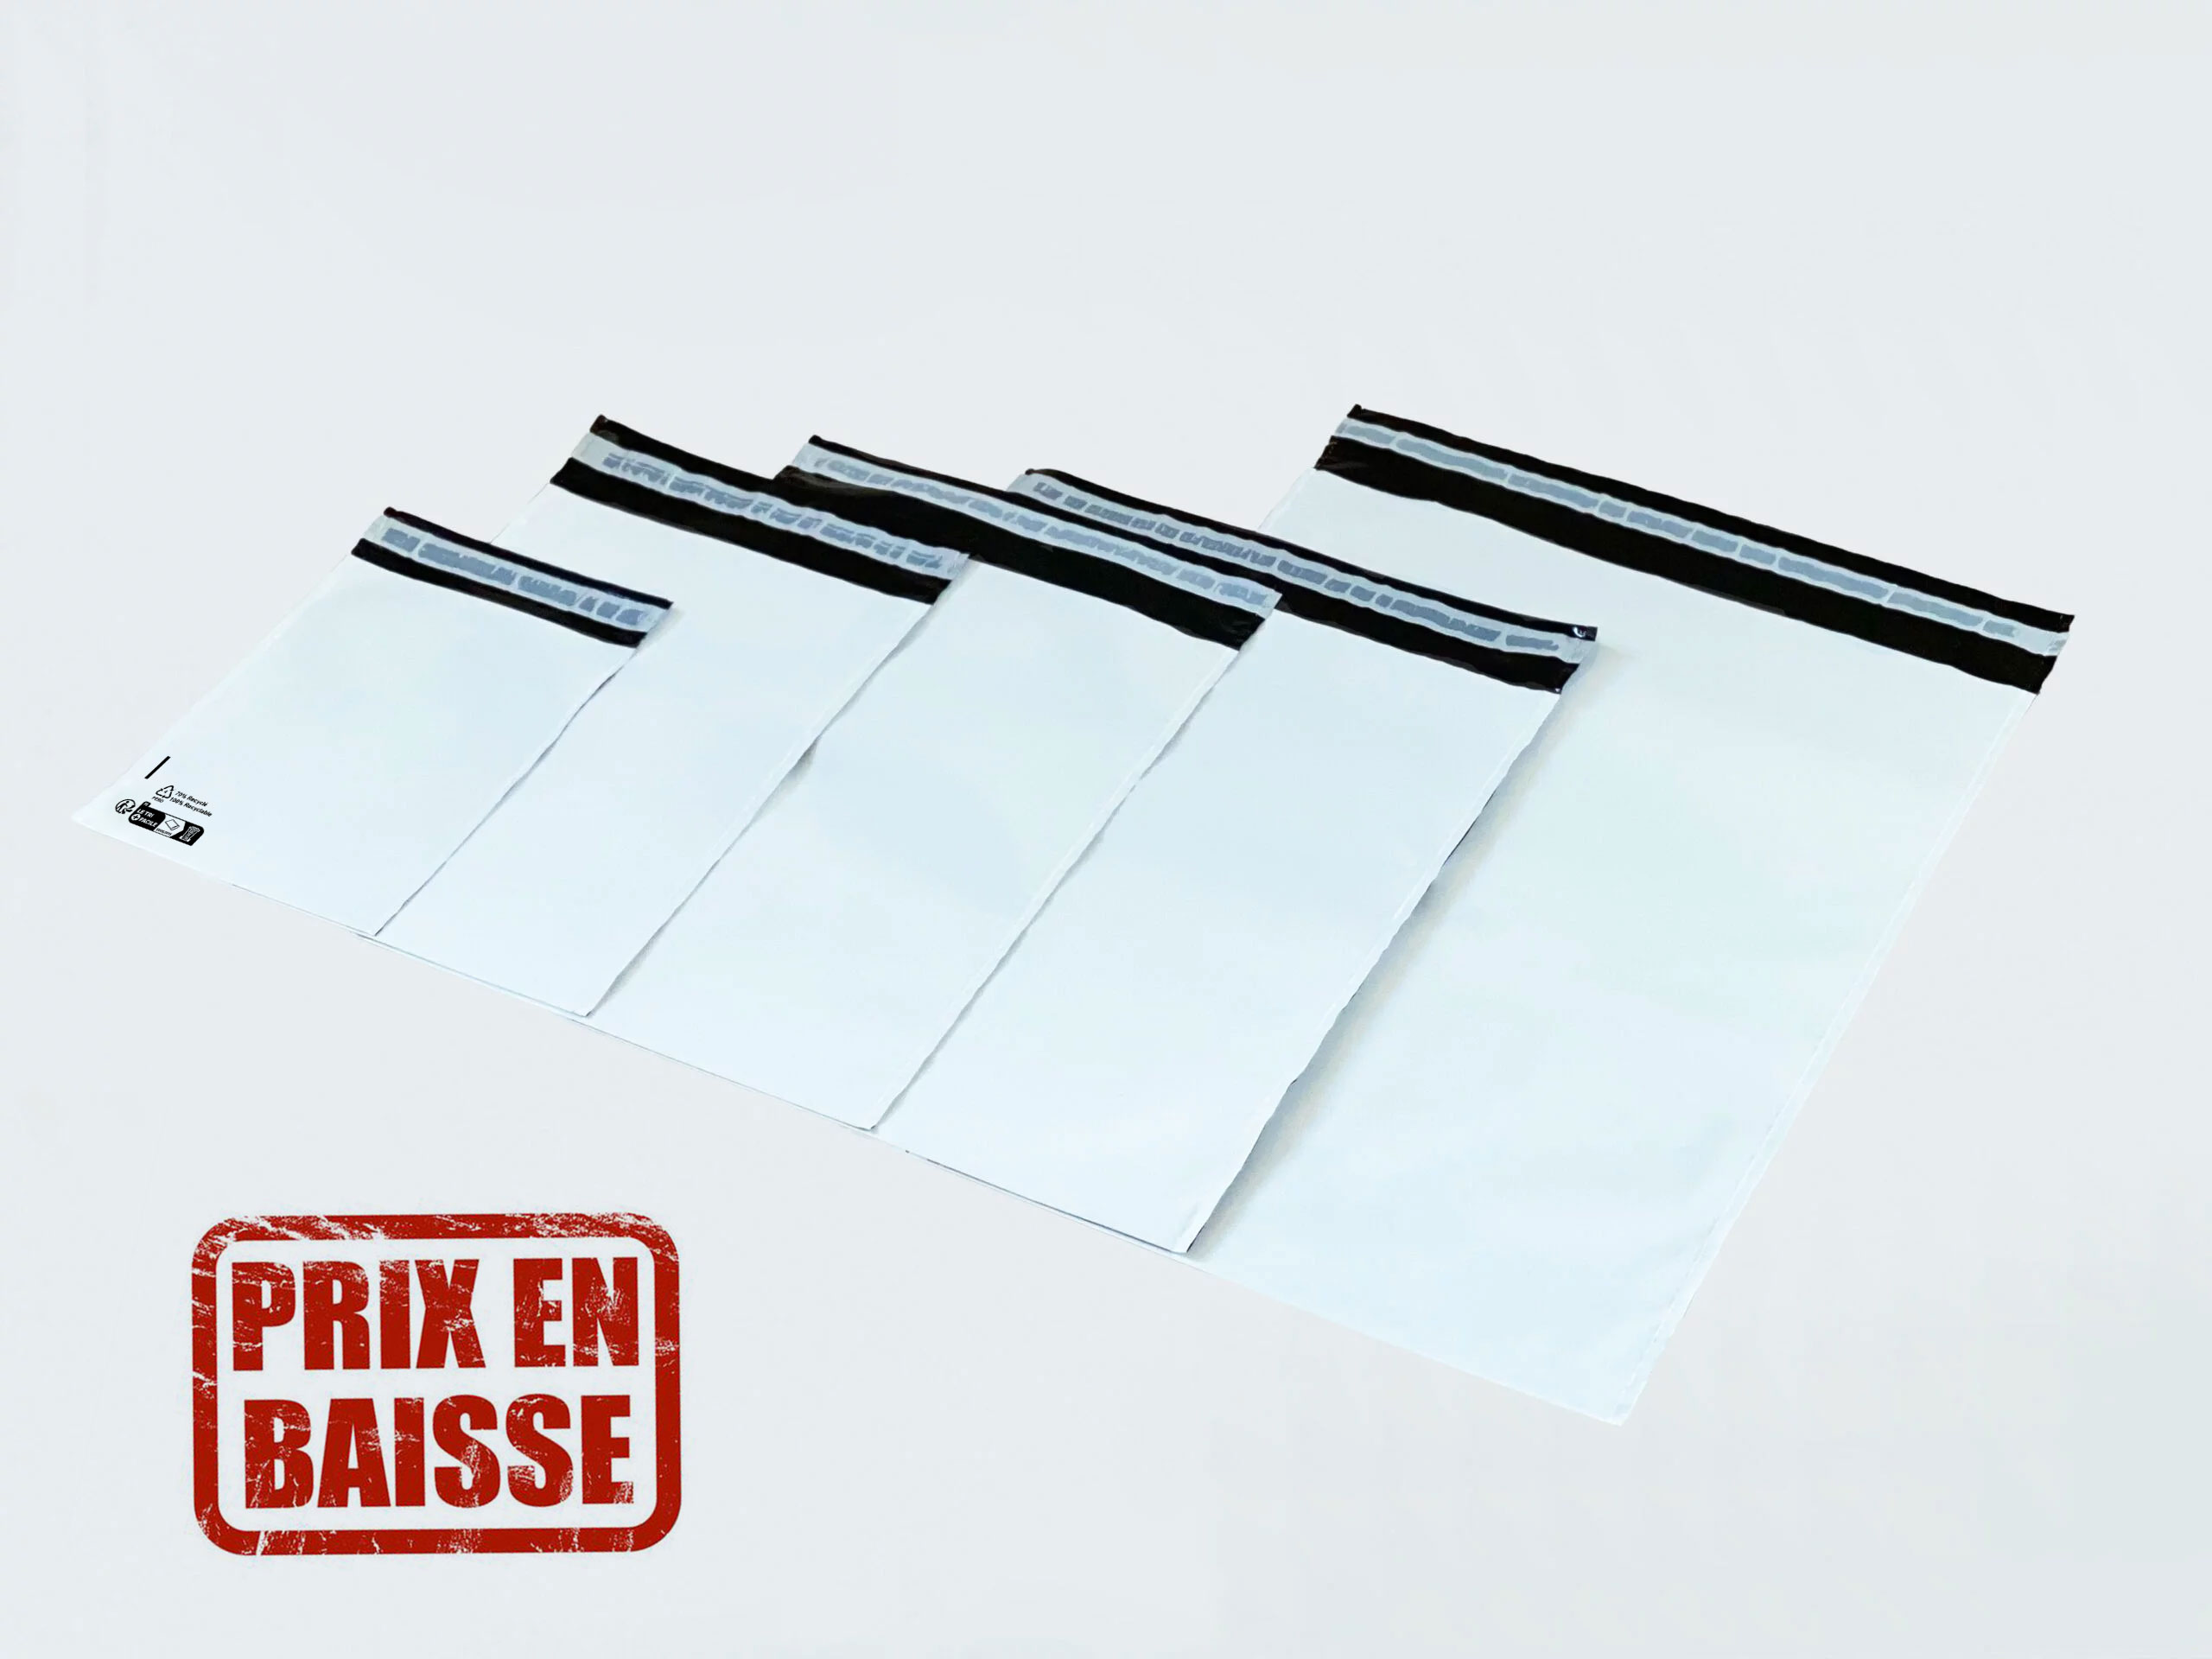 Enveloppe plastique opaque résistante en 80µ - 260 x 400 mm